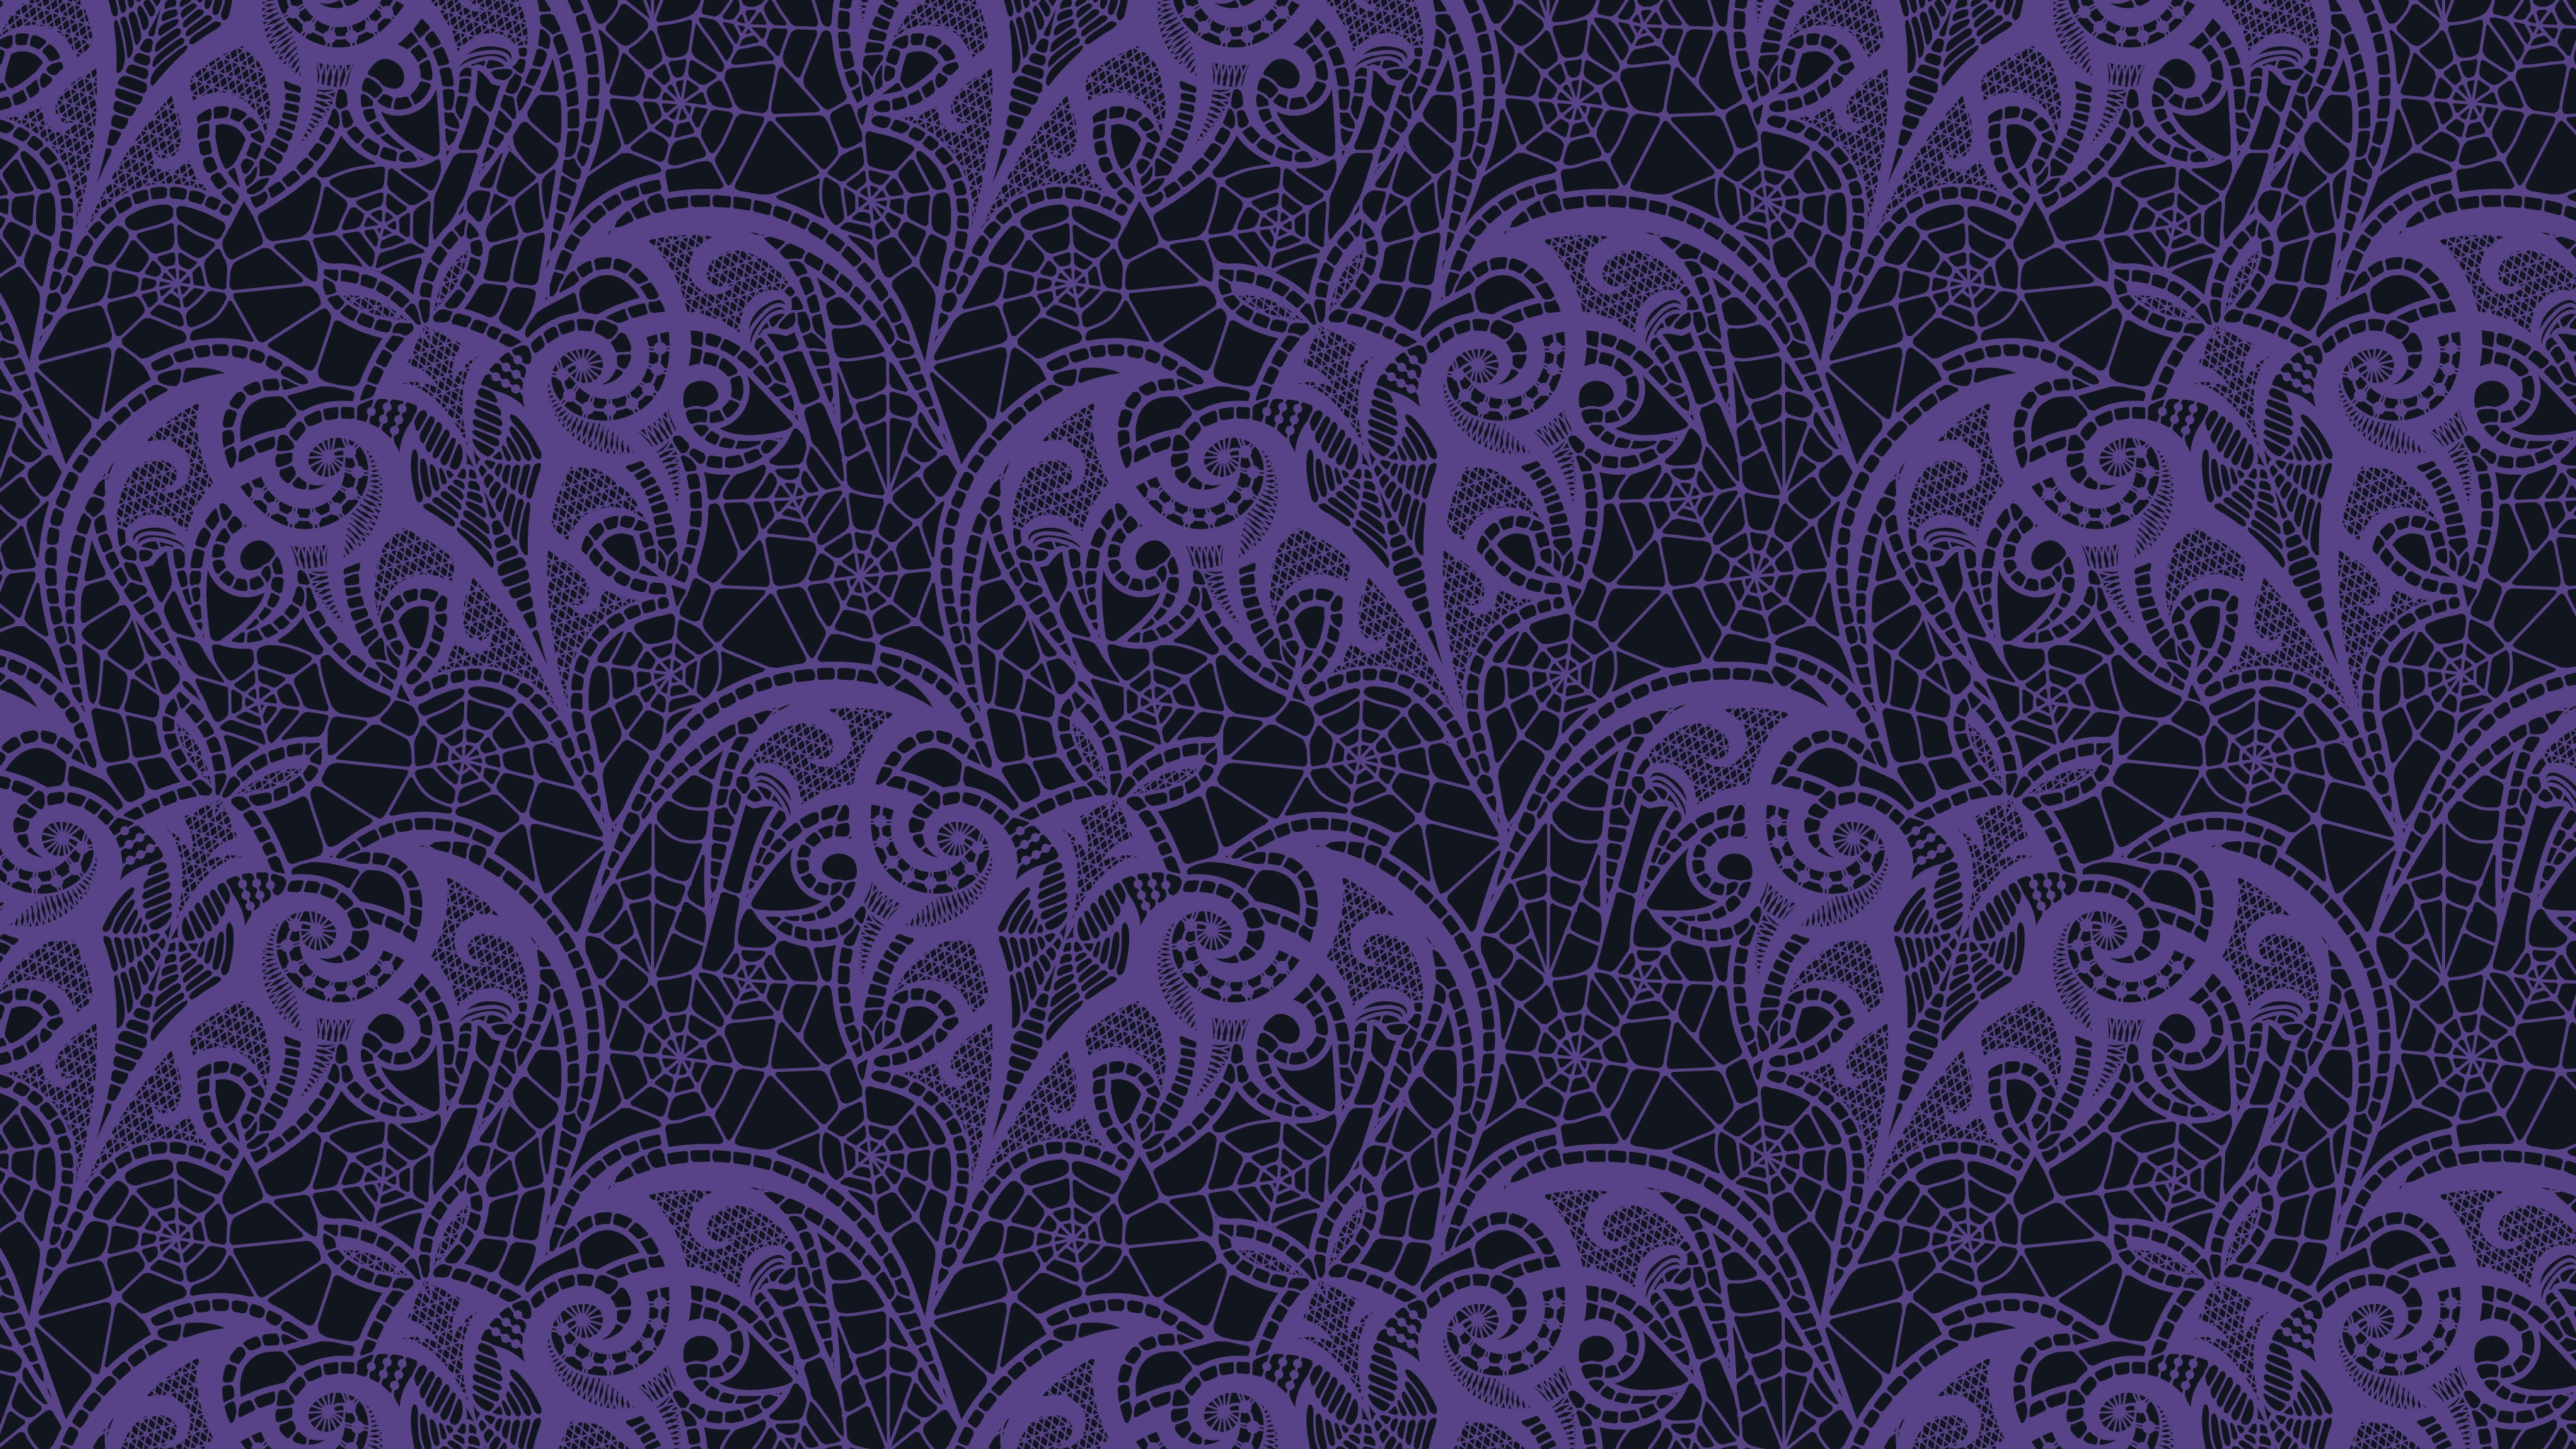 Lace Bats in Grape & Graphite - Studio Ten Design